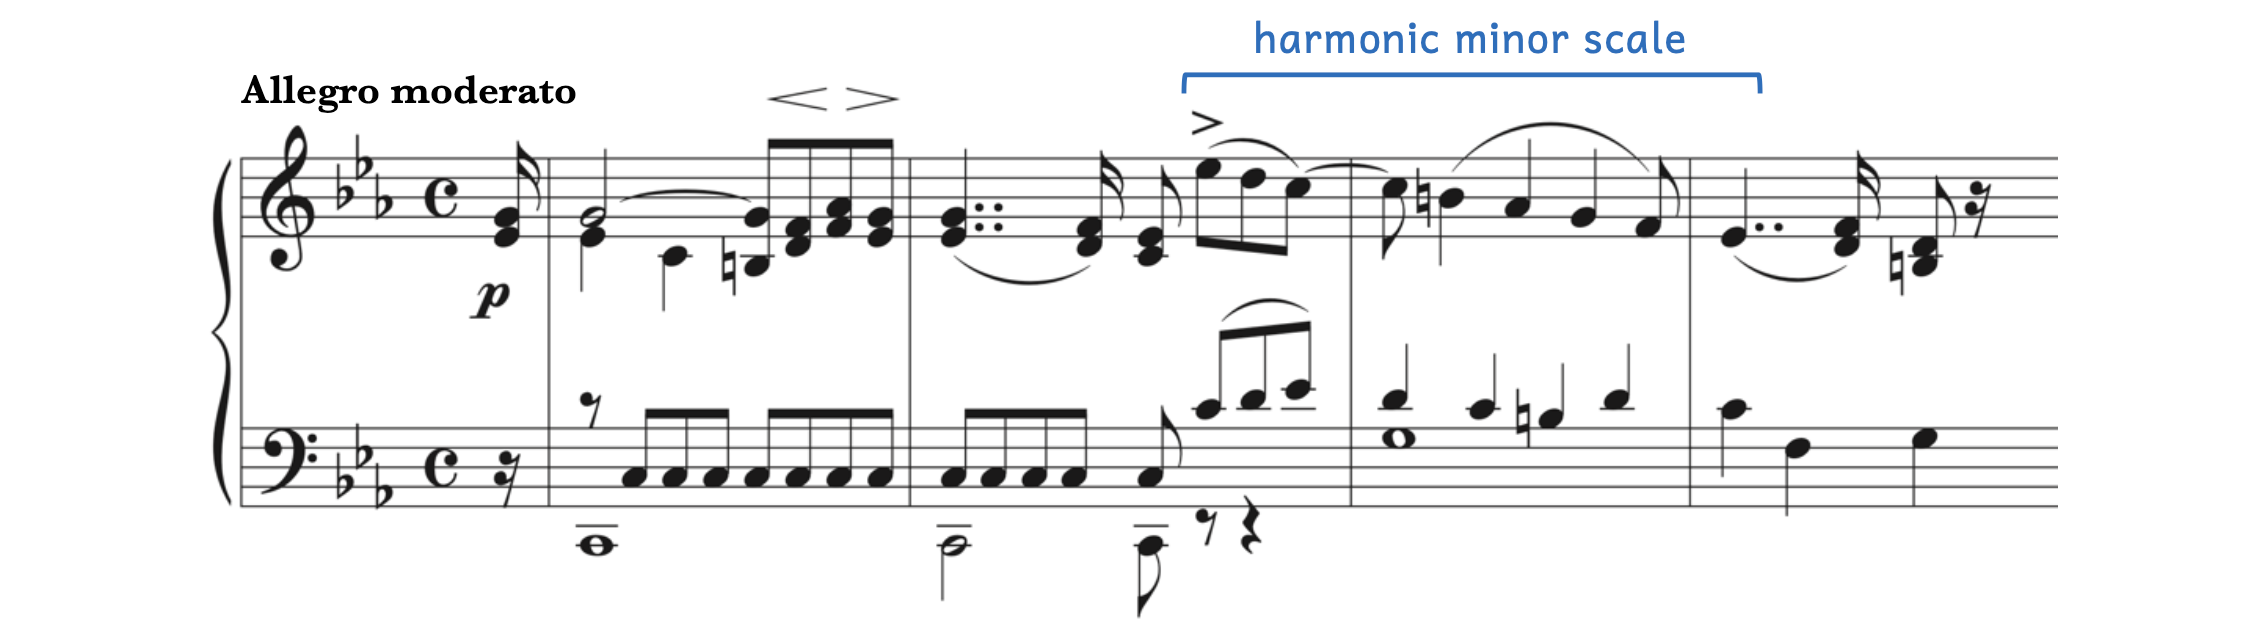 Example of a harmonic minor scale in Liebmann's, Piano Sonata No. 3, first movement - Allegro moderato.